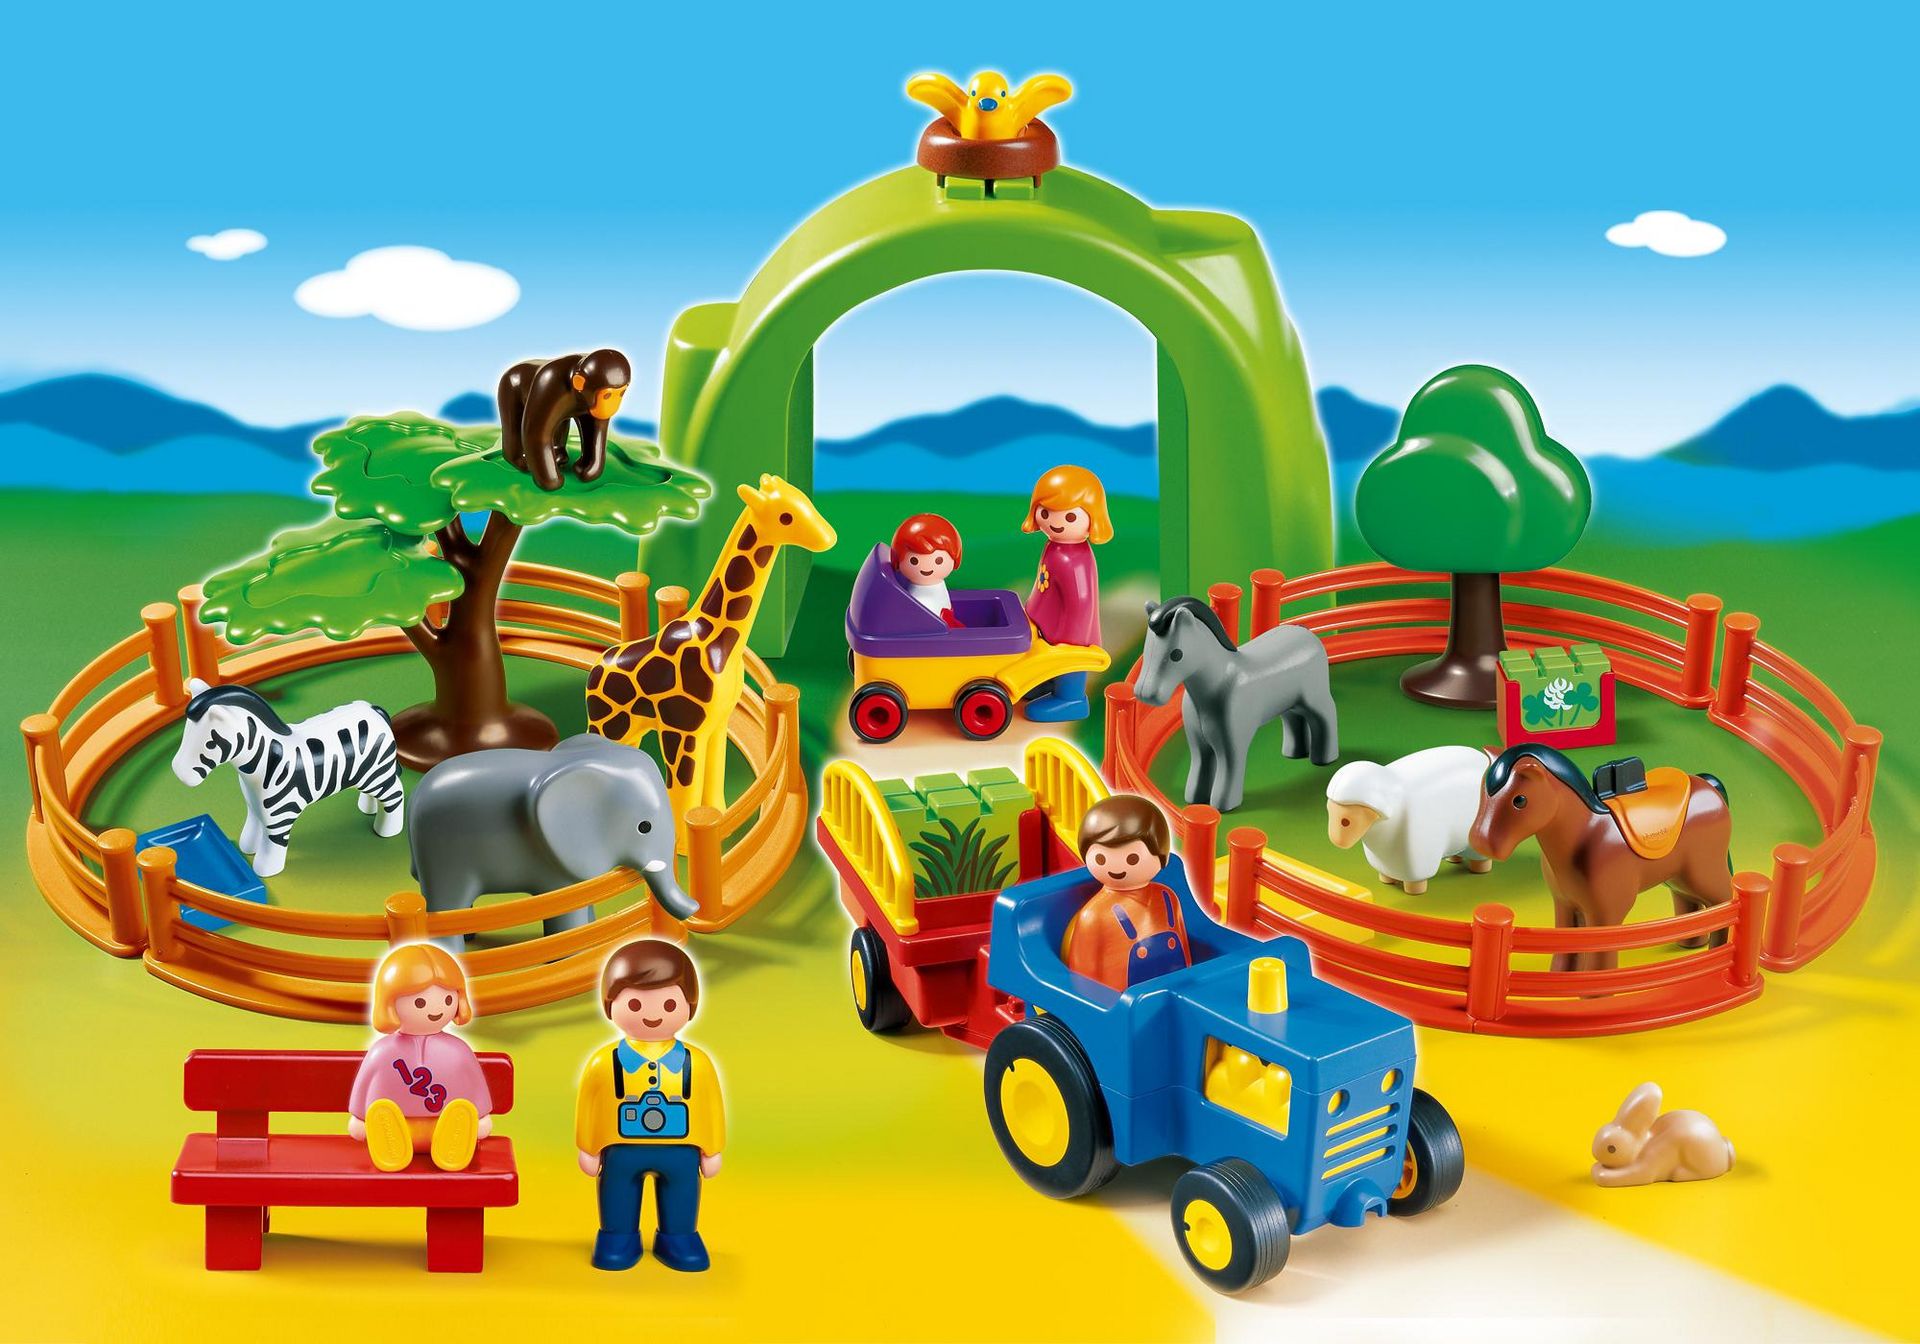 Playmobil 123 1 2 3 First Smile animal animales 1 x vaca ubre marrón granja zoo 